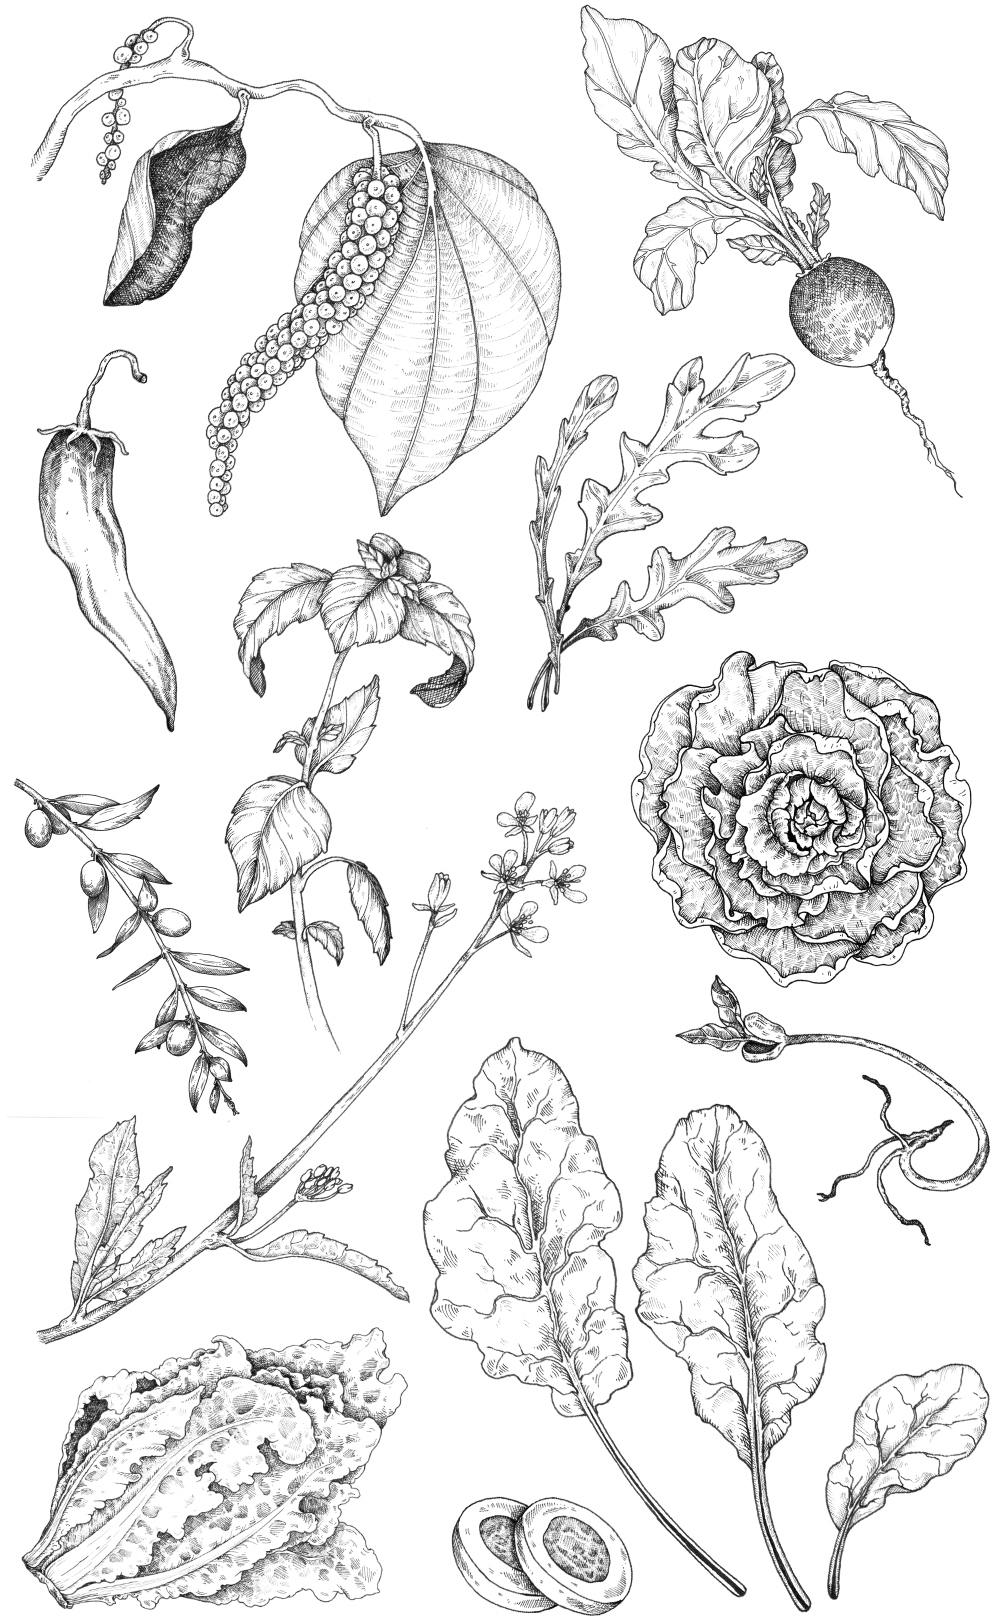 Vegetables illustrations for Oscar Mayer campain.